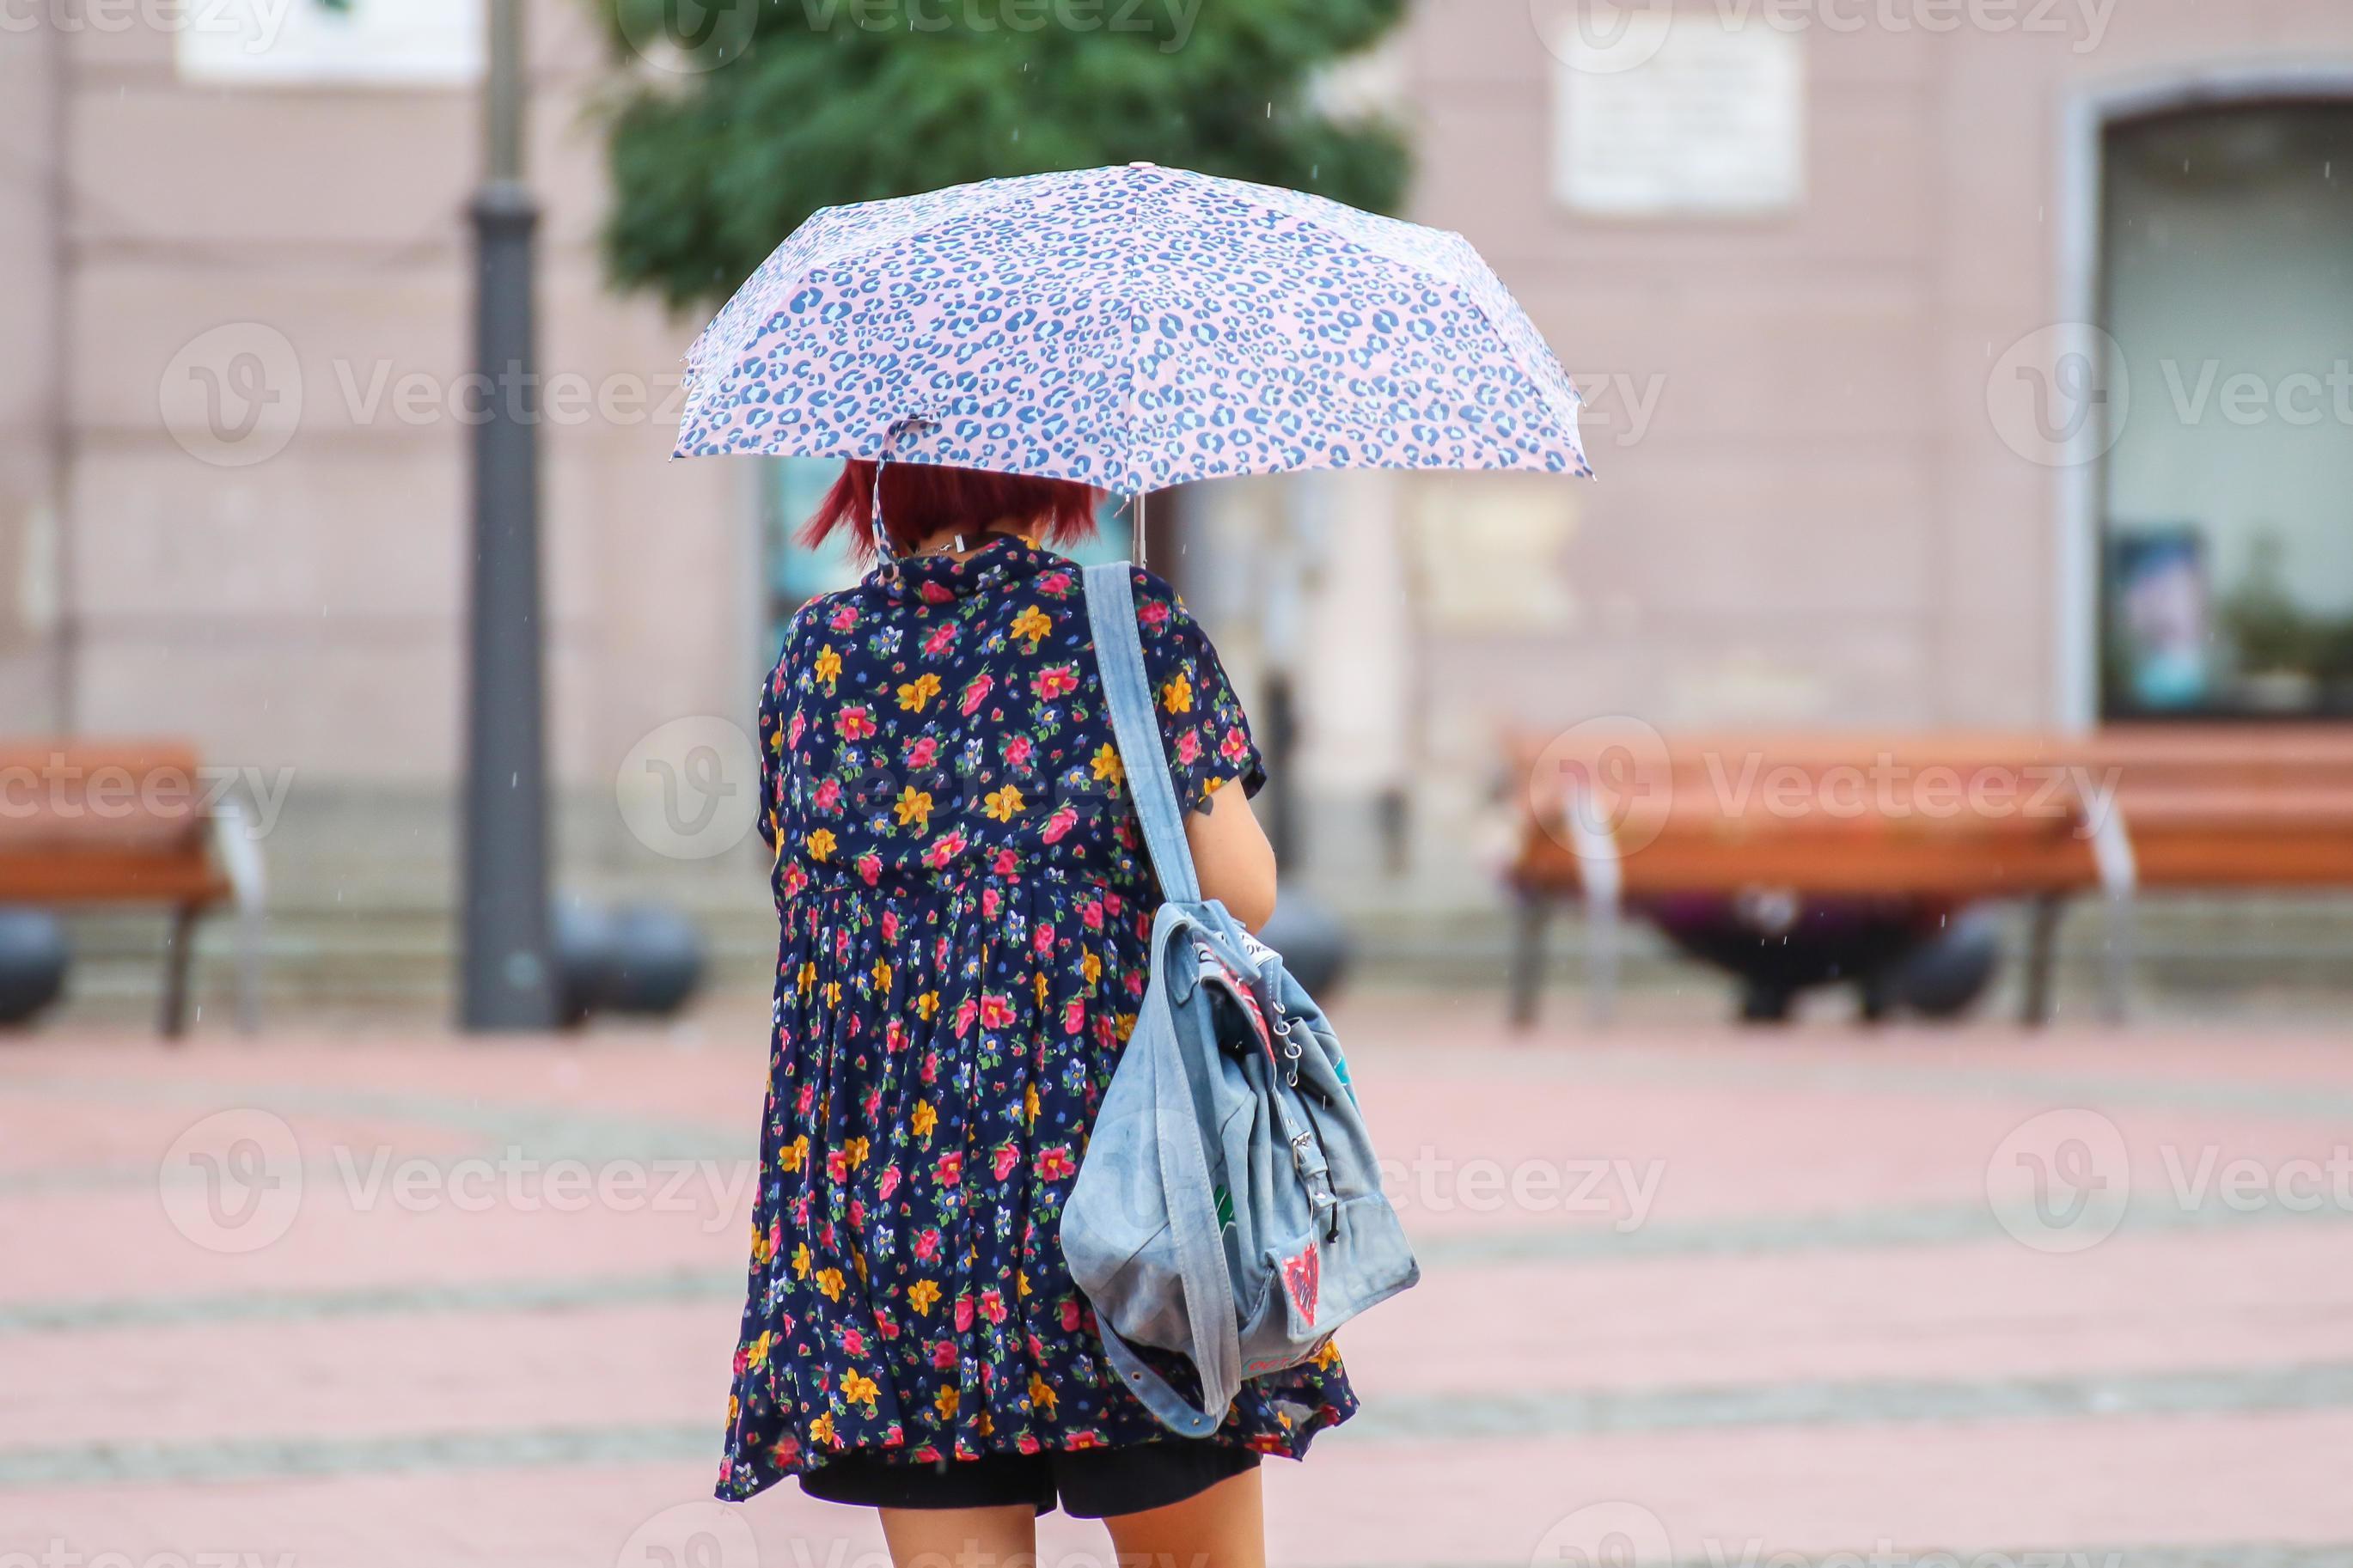 knoop Allergie Beeldhouwwerk mensen met paraplu wandelen Aan de straat 18845733 stockfoto bij Vecteezy